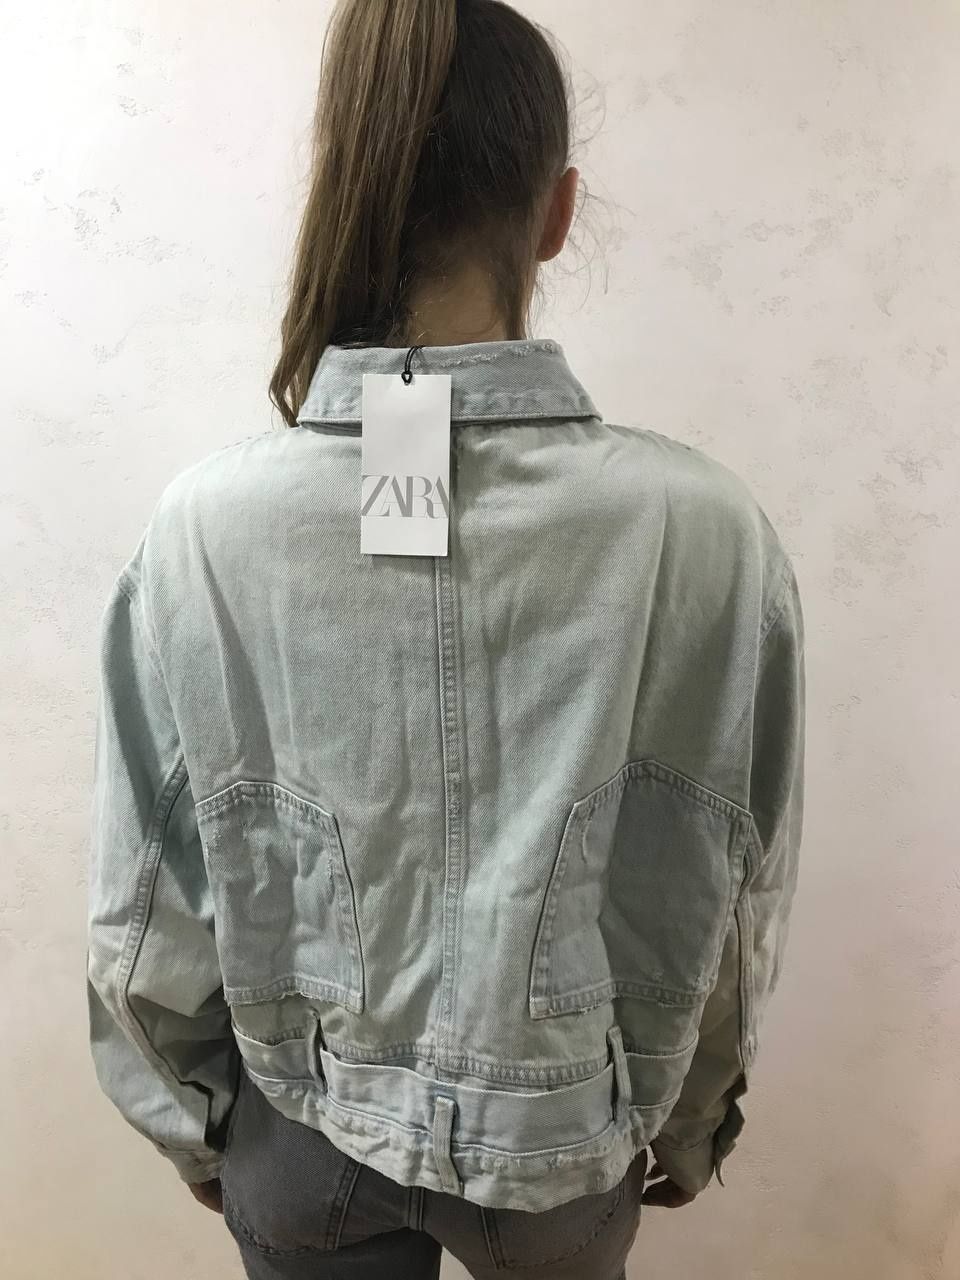 Джинсова куртка з імітацією поясу штанів ВІД ZARA, джинсова куртка